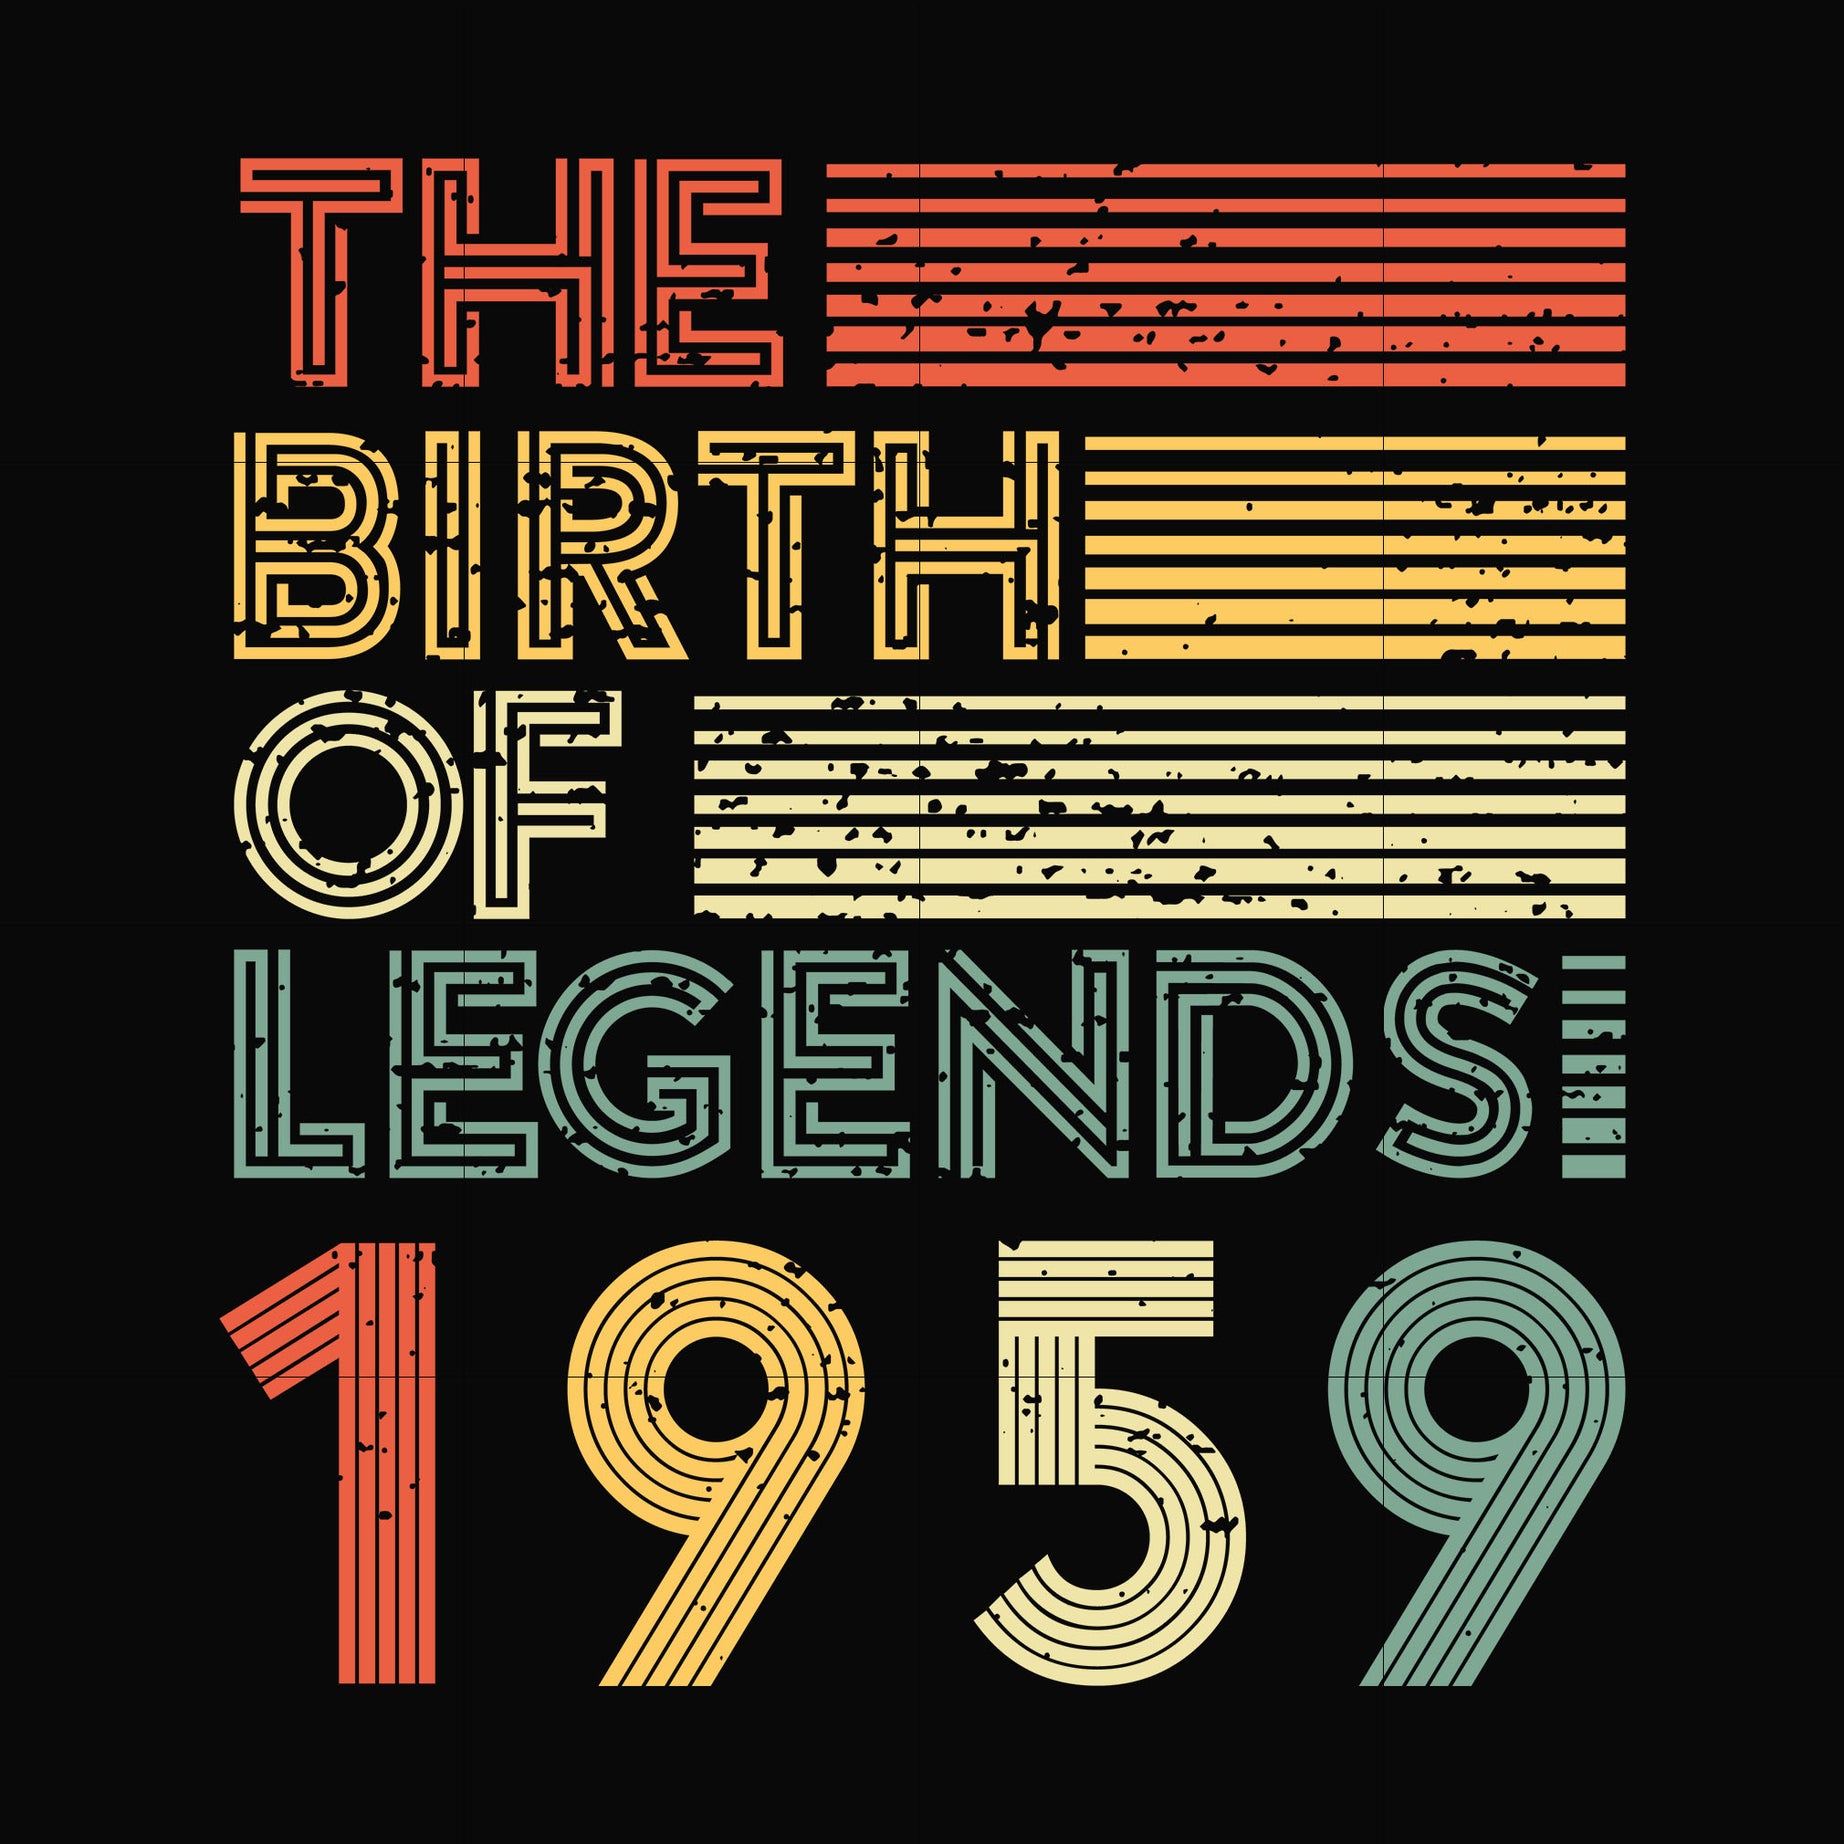 The birth of legends 1959 svg, png, dxf, eps digital file NBD0061